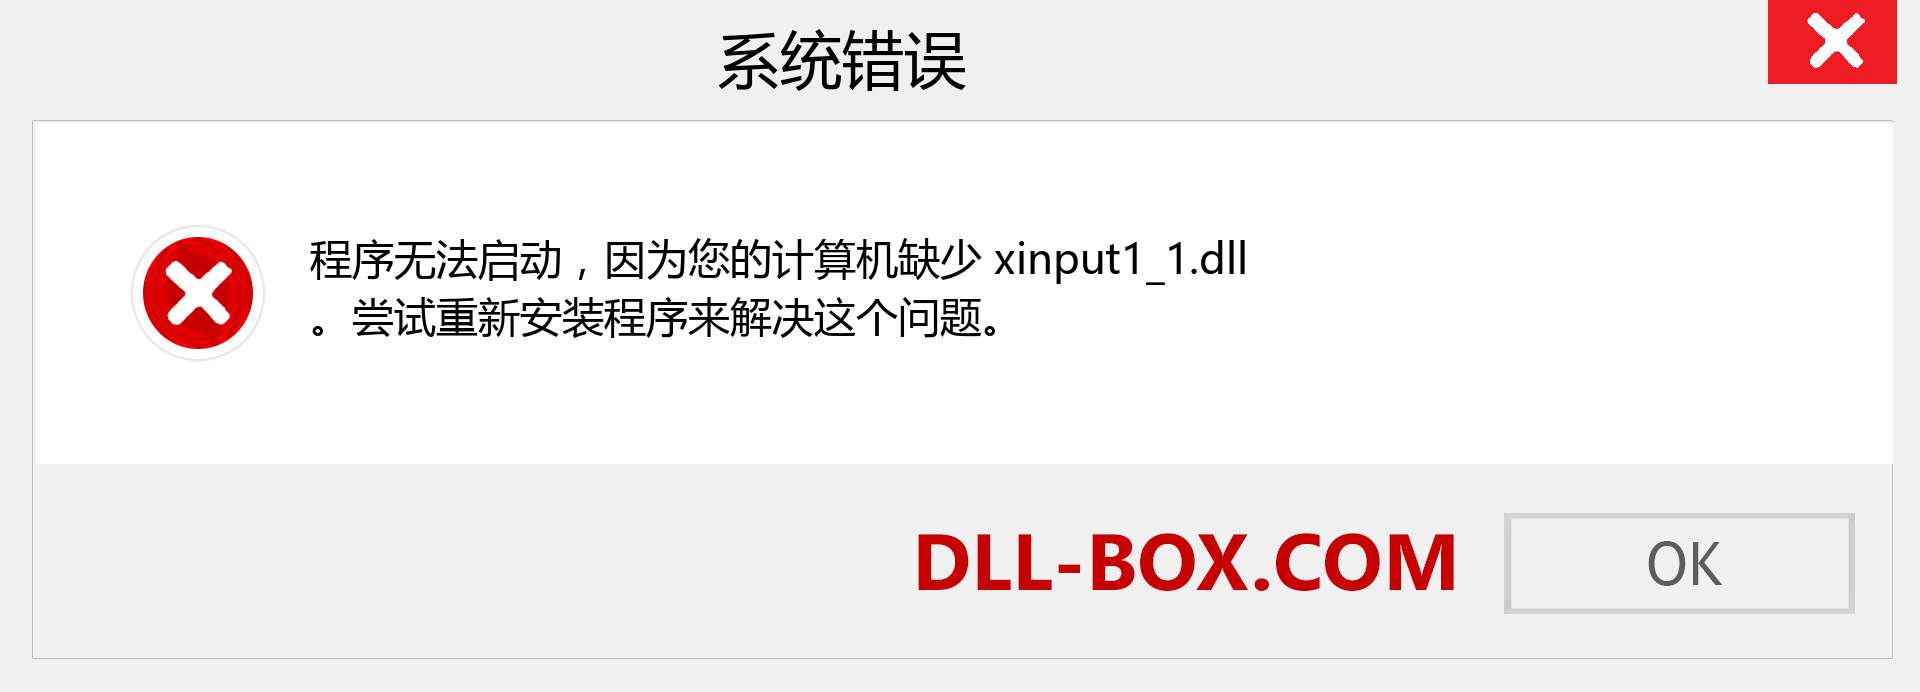 xinput1_1.dll 文件丢失？。 适用于 Windows 7、8、10 的下载 - 修复 Windows、照片、图像上的 xinput1_1 dll 丢失错误